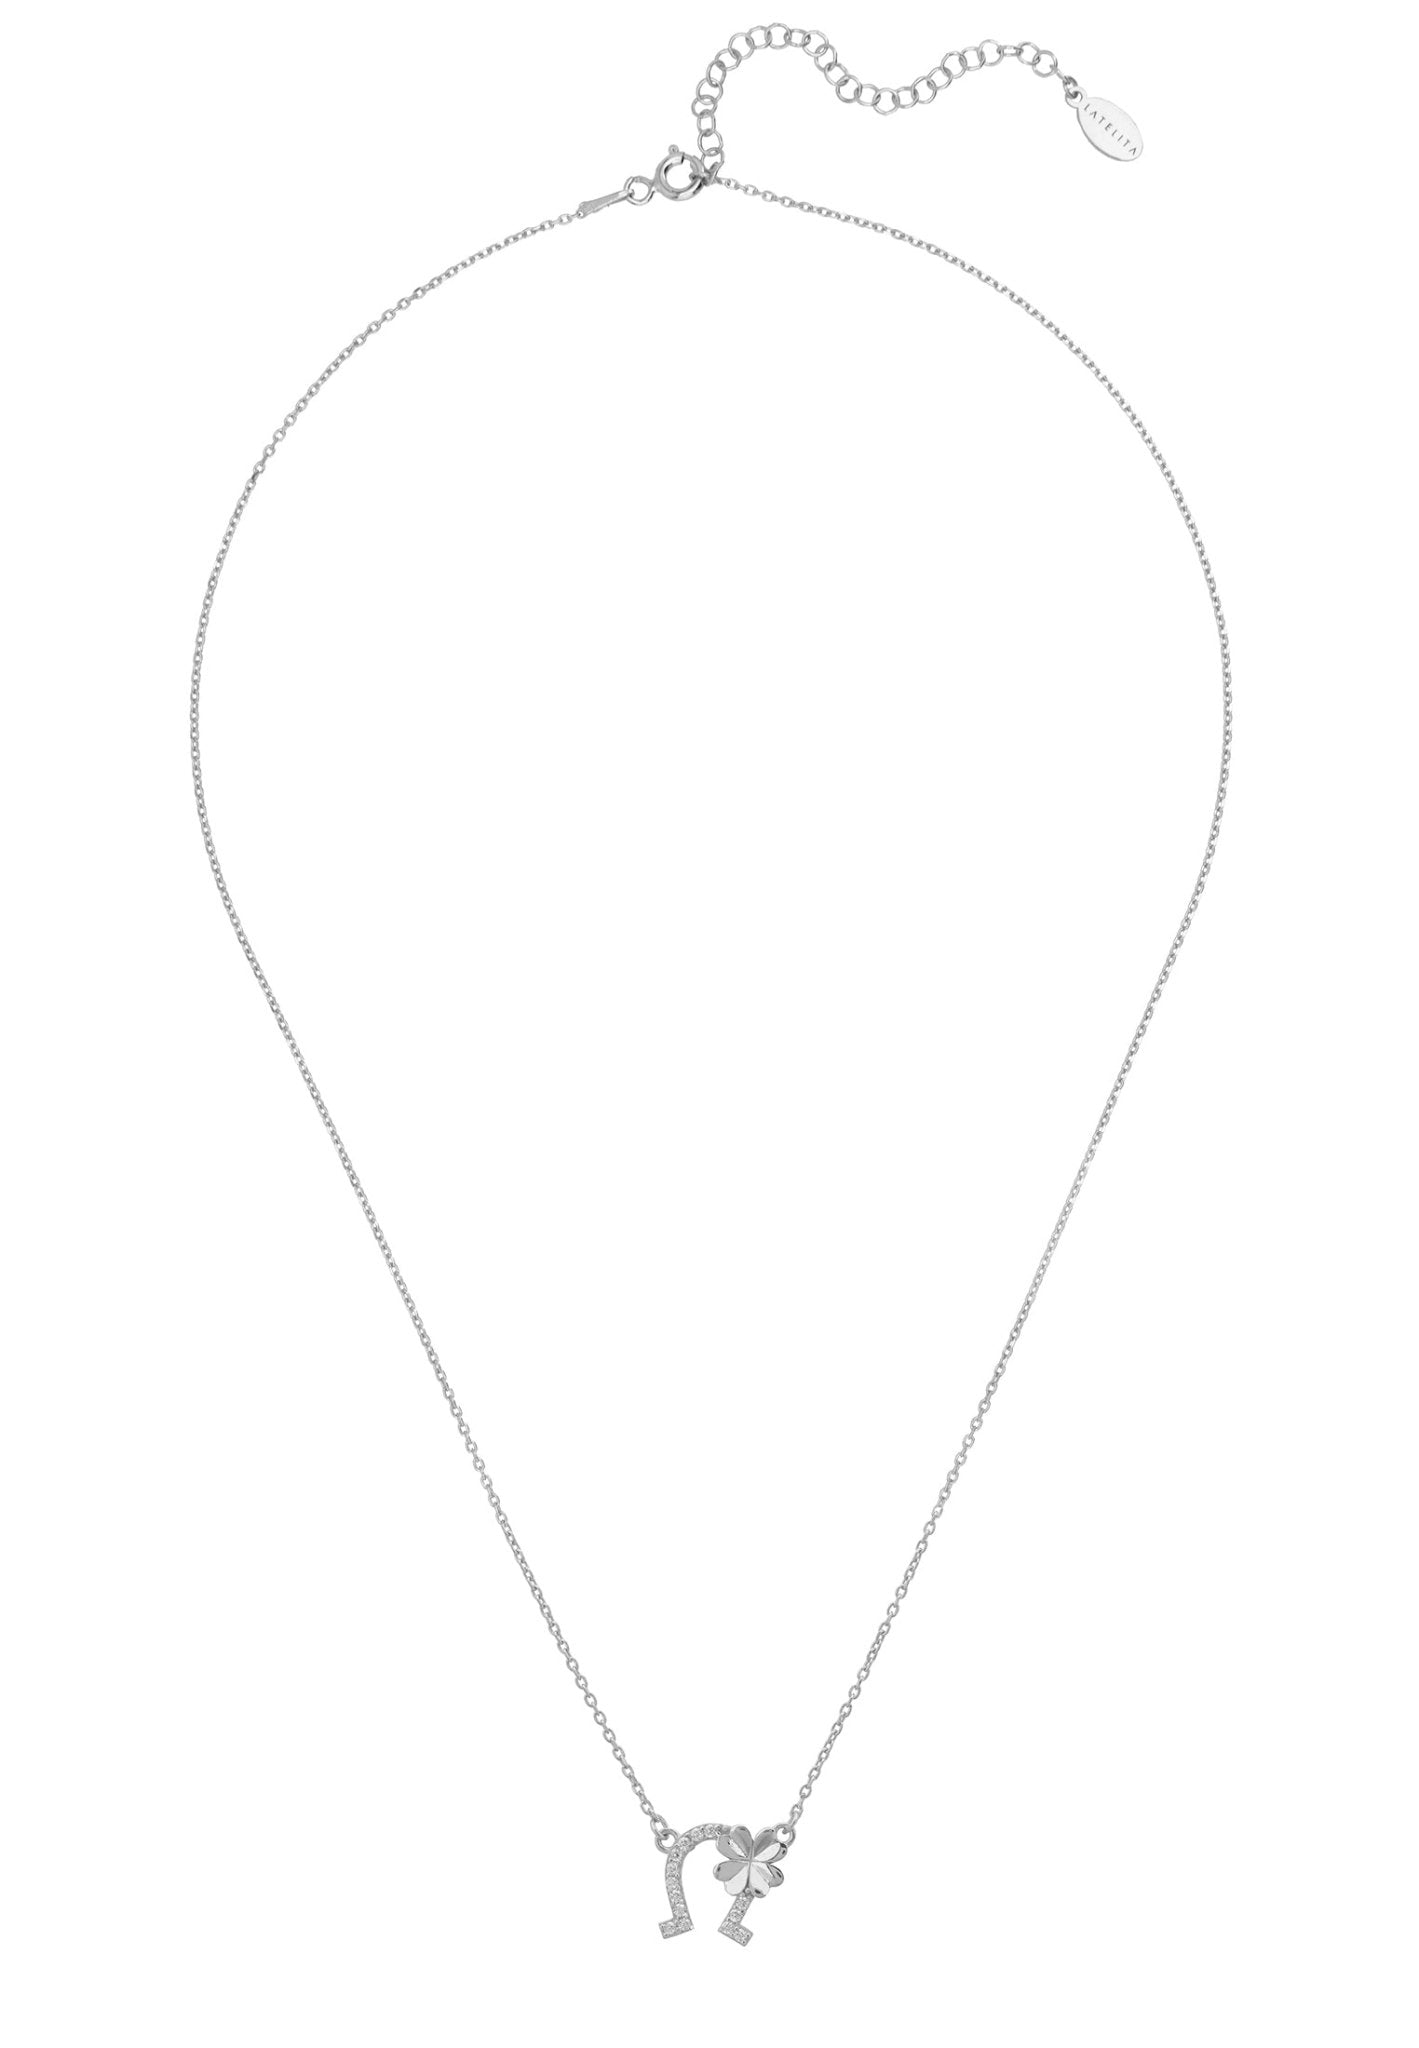 Horseshoe And Shamrock Necklace Silver - LATELITA Necklaces